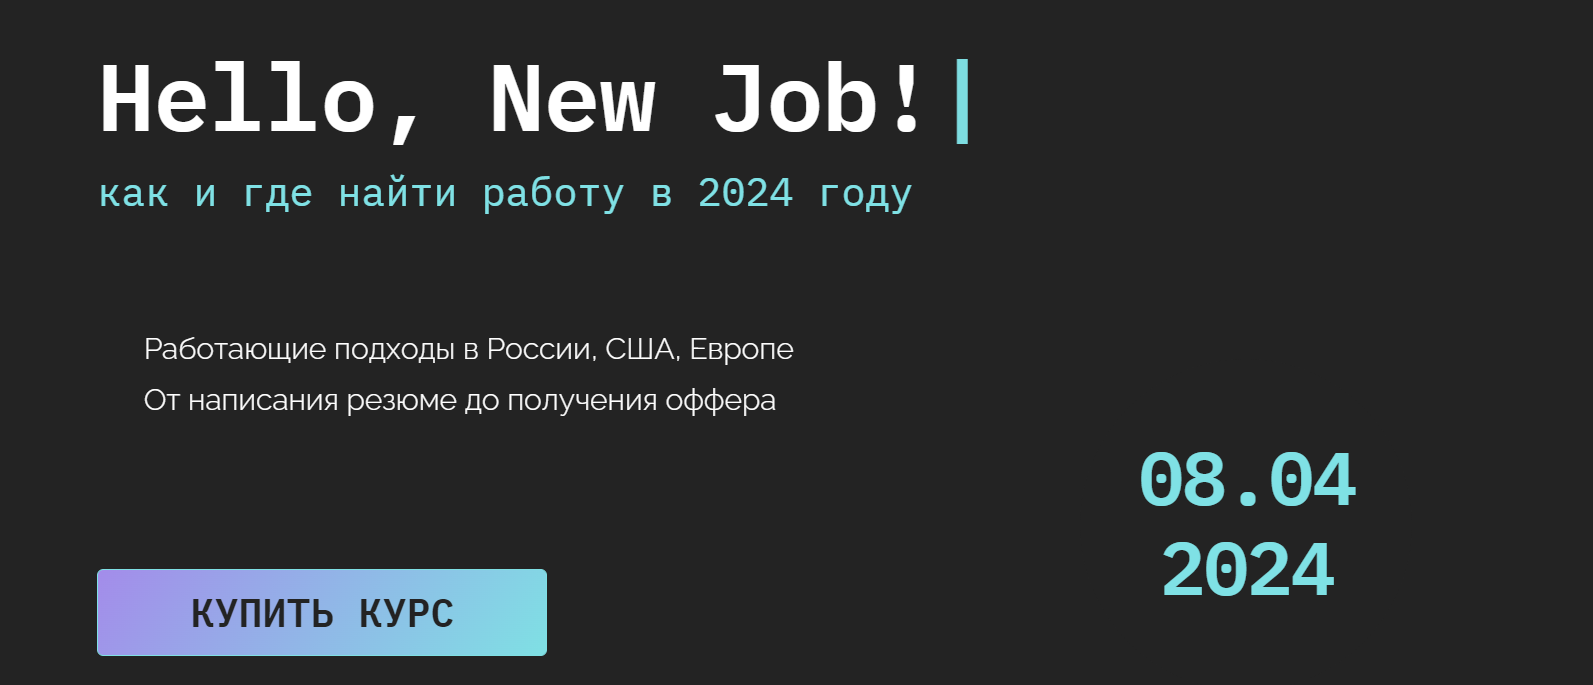 xHUAKF2cQQuuC7hkLtF0bQ Бизнес [Кира Кузьменко] Hello, New Job! Как и где найти работу 2.0 (2023)